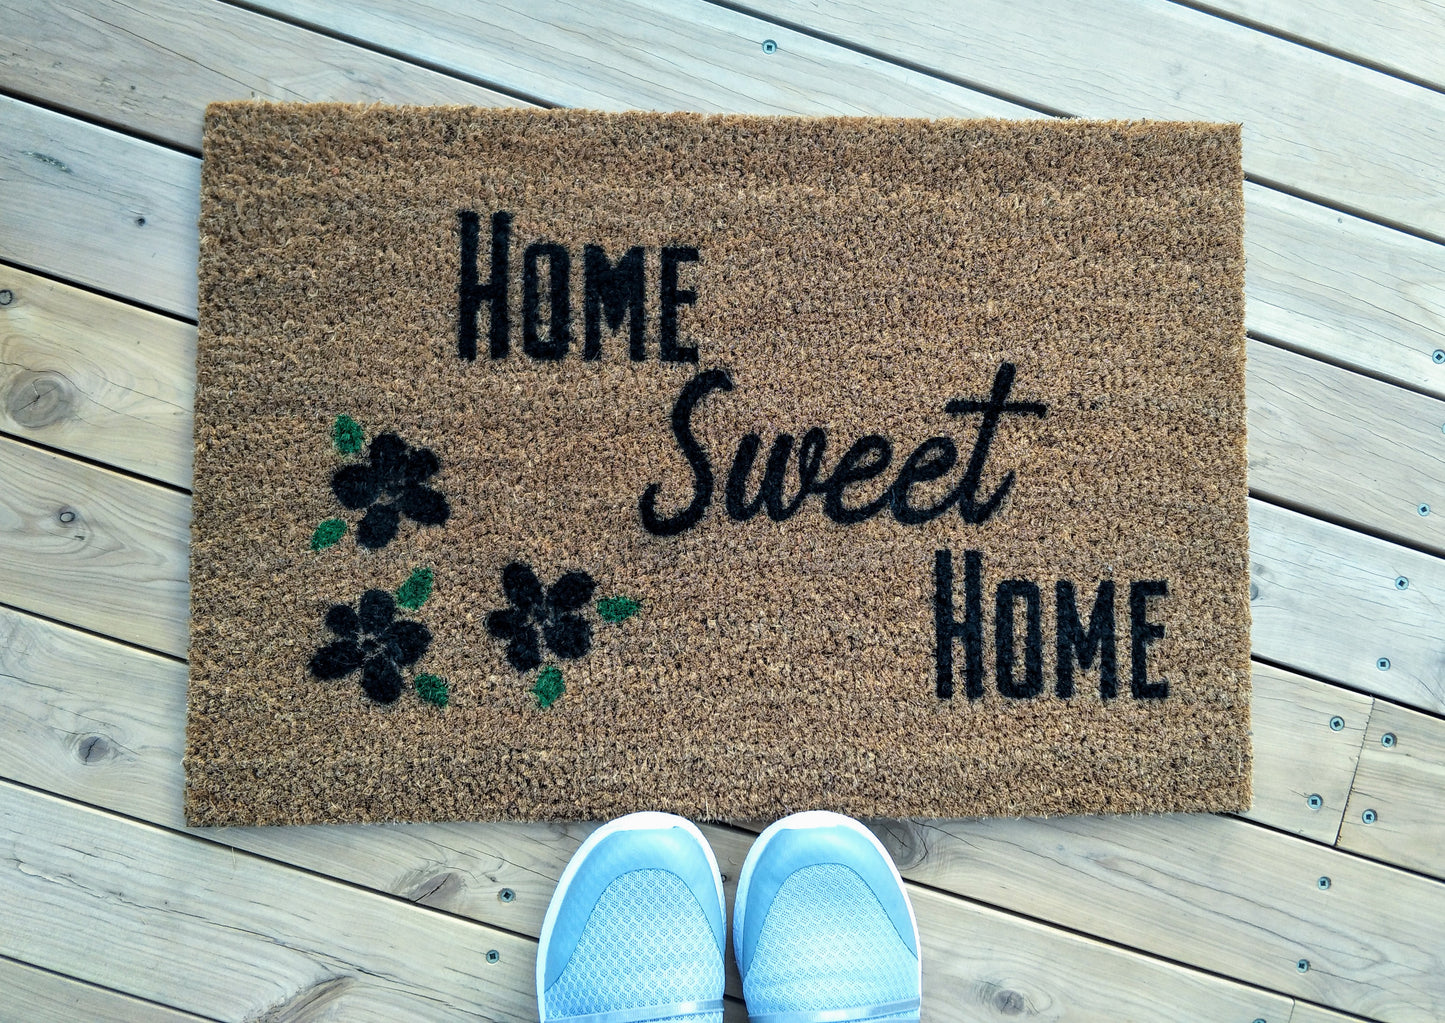 Home Sweet Home doormat with Petals - Personalised Doormat Australia